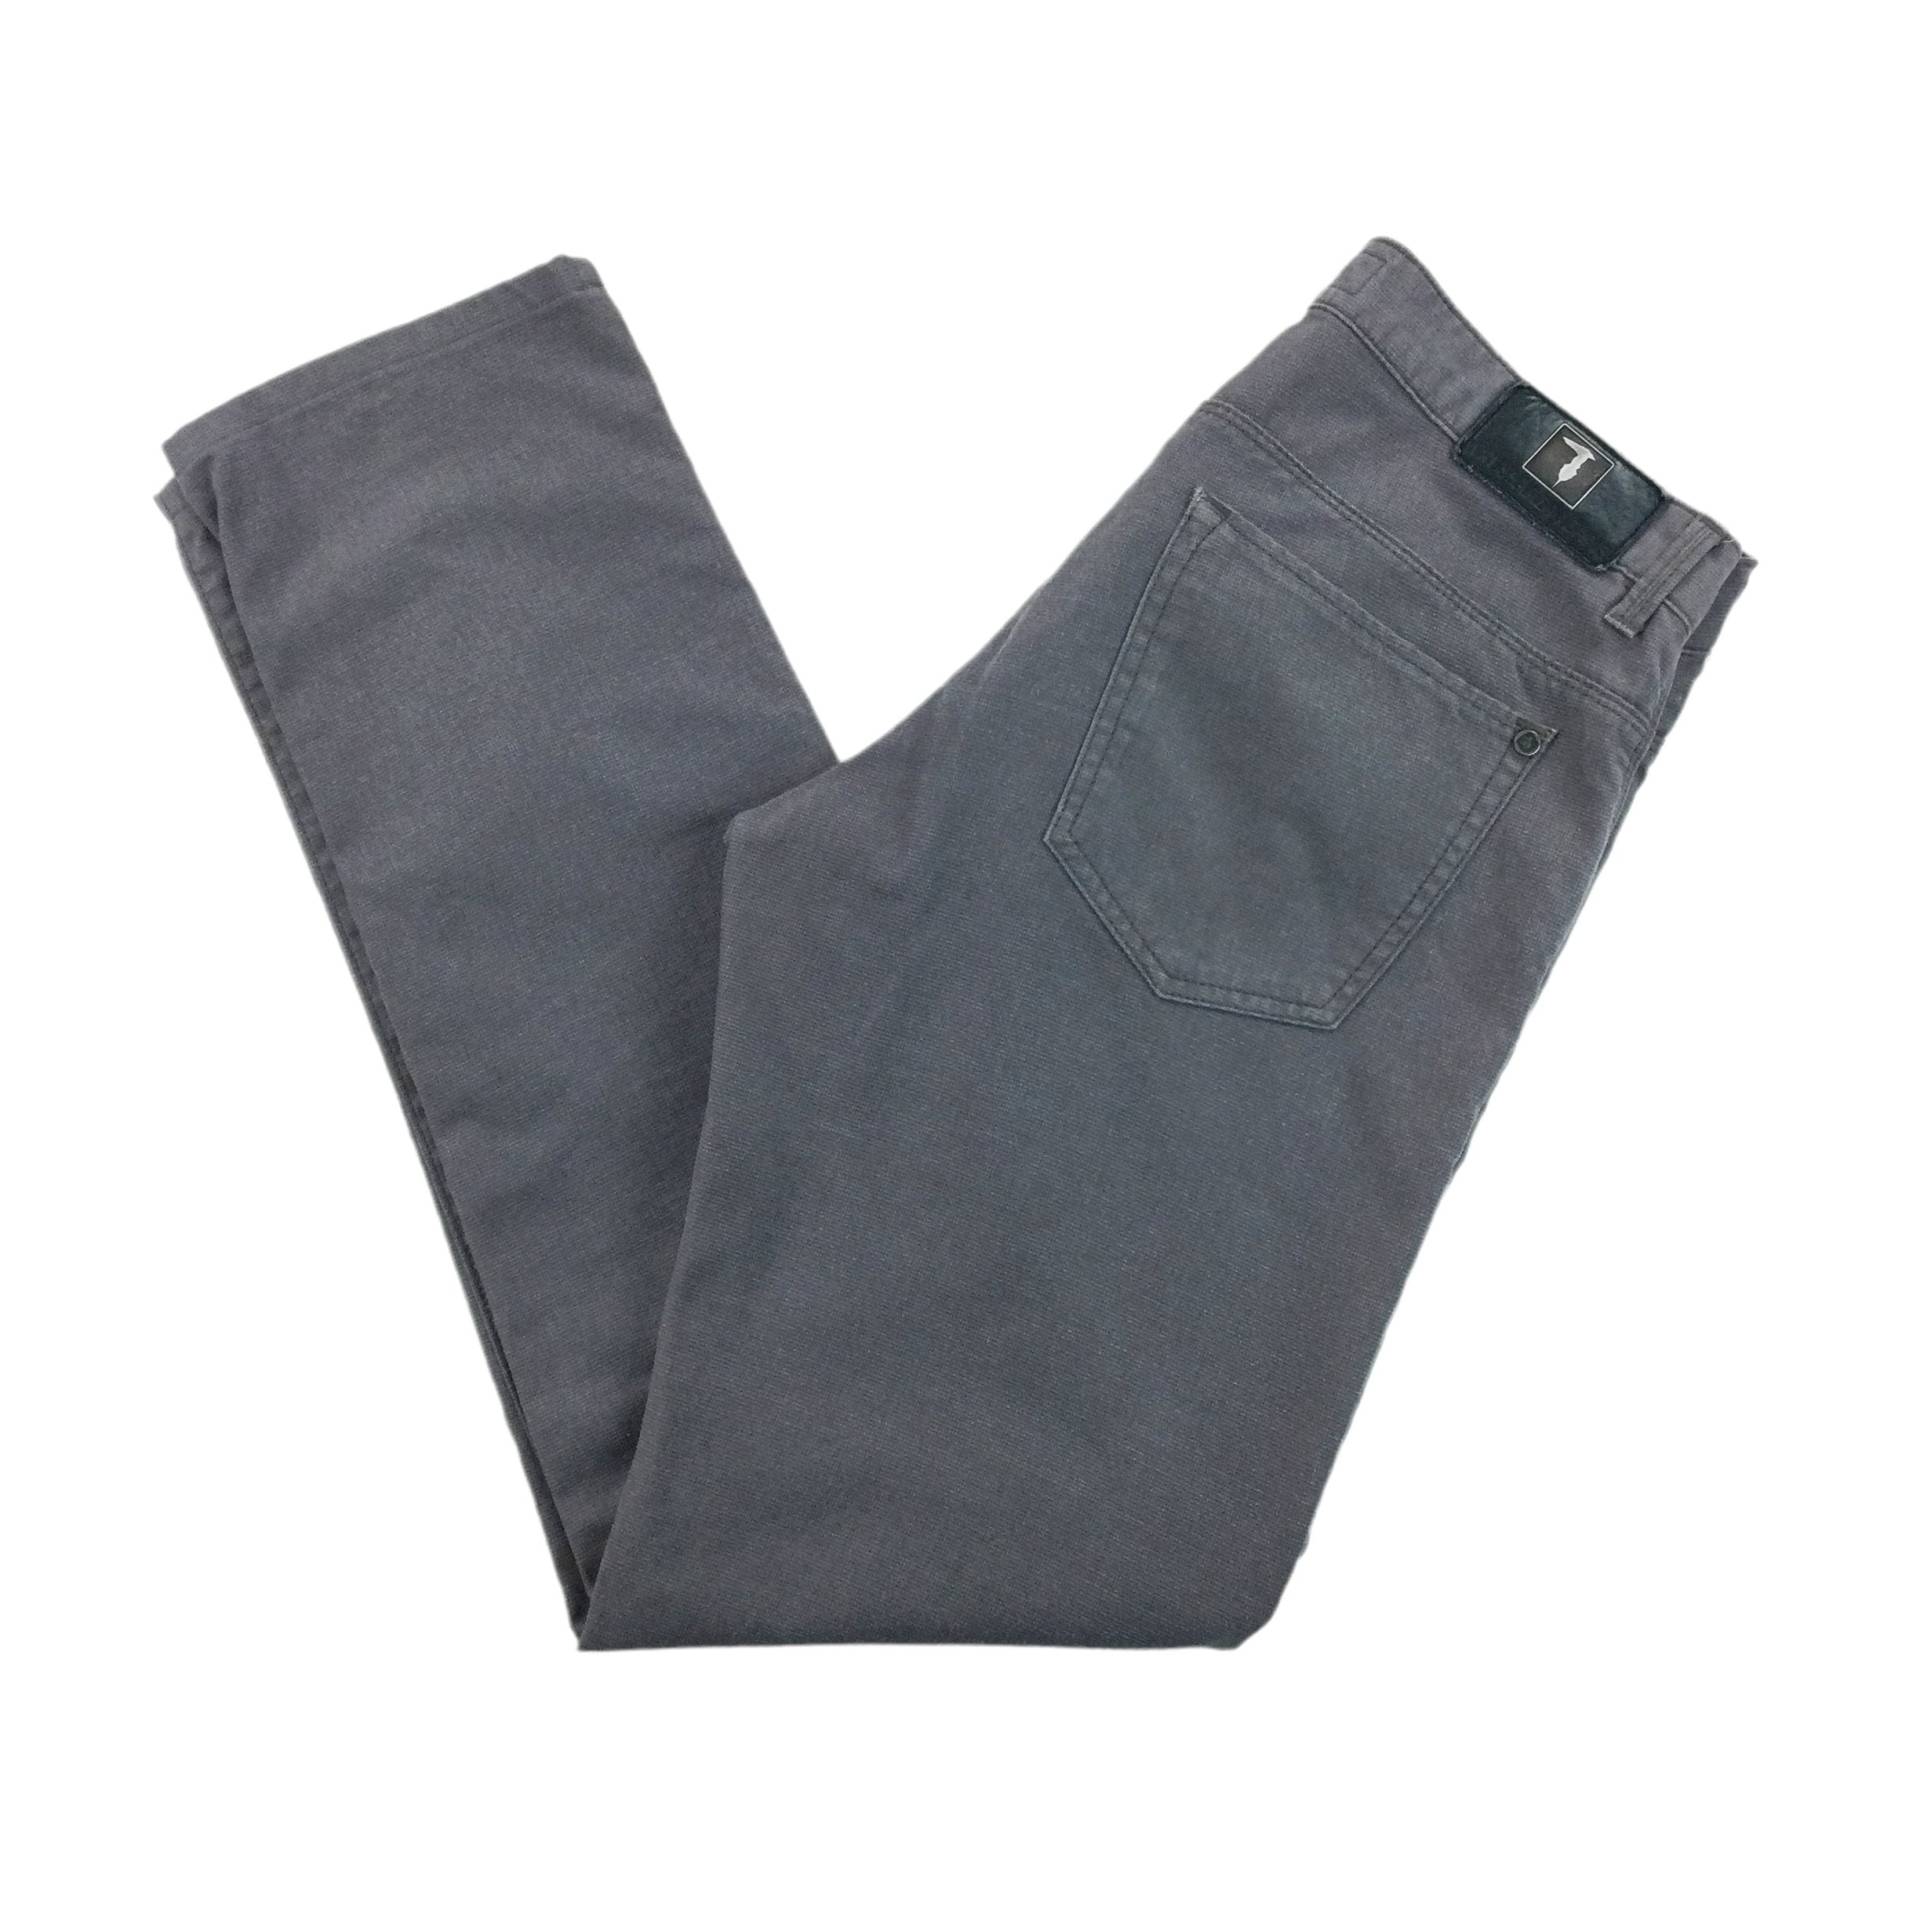 Vintage Herren Trussardi Jeans - W33 L32 Größe Hose Gebrauchte Unterseite von aloisstudio